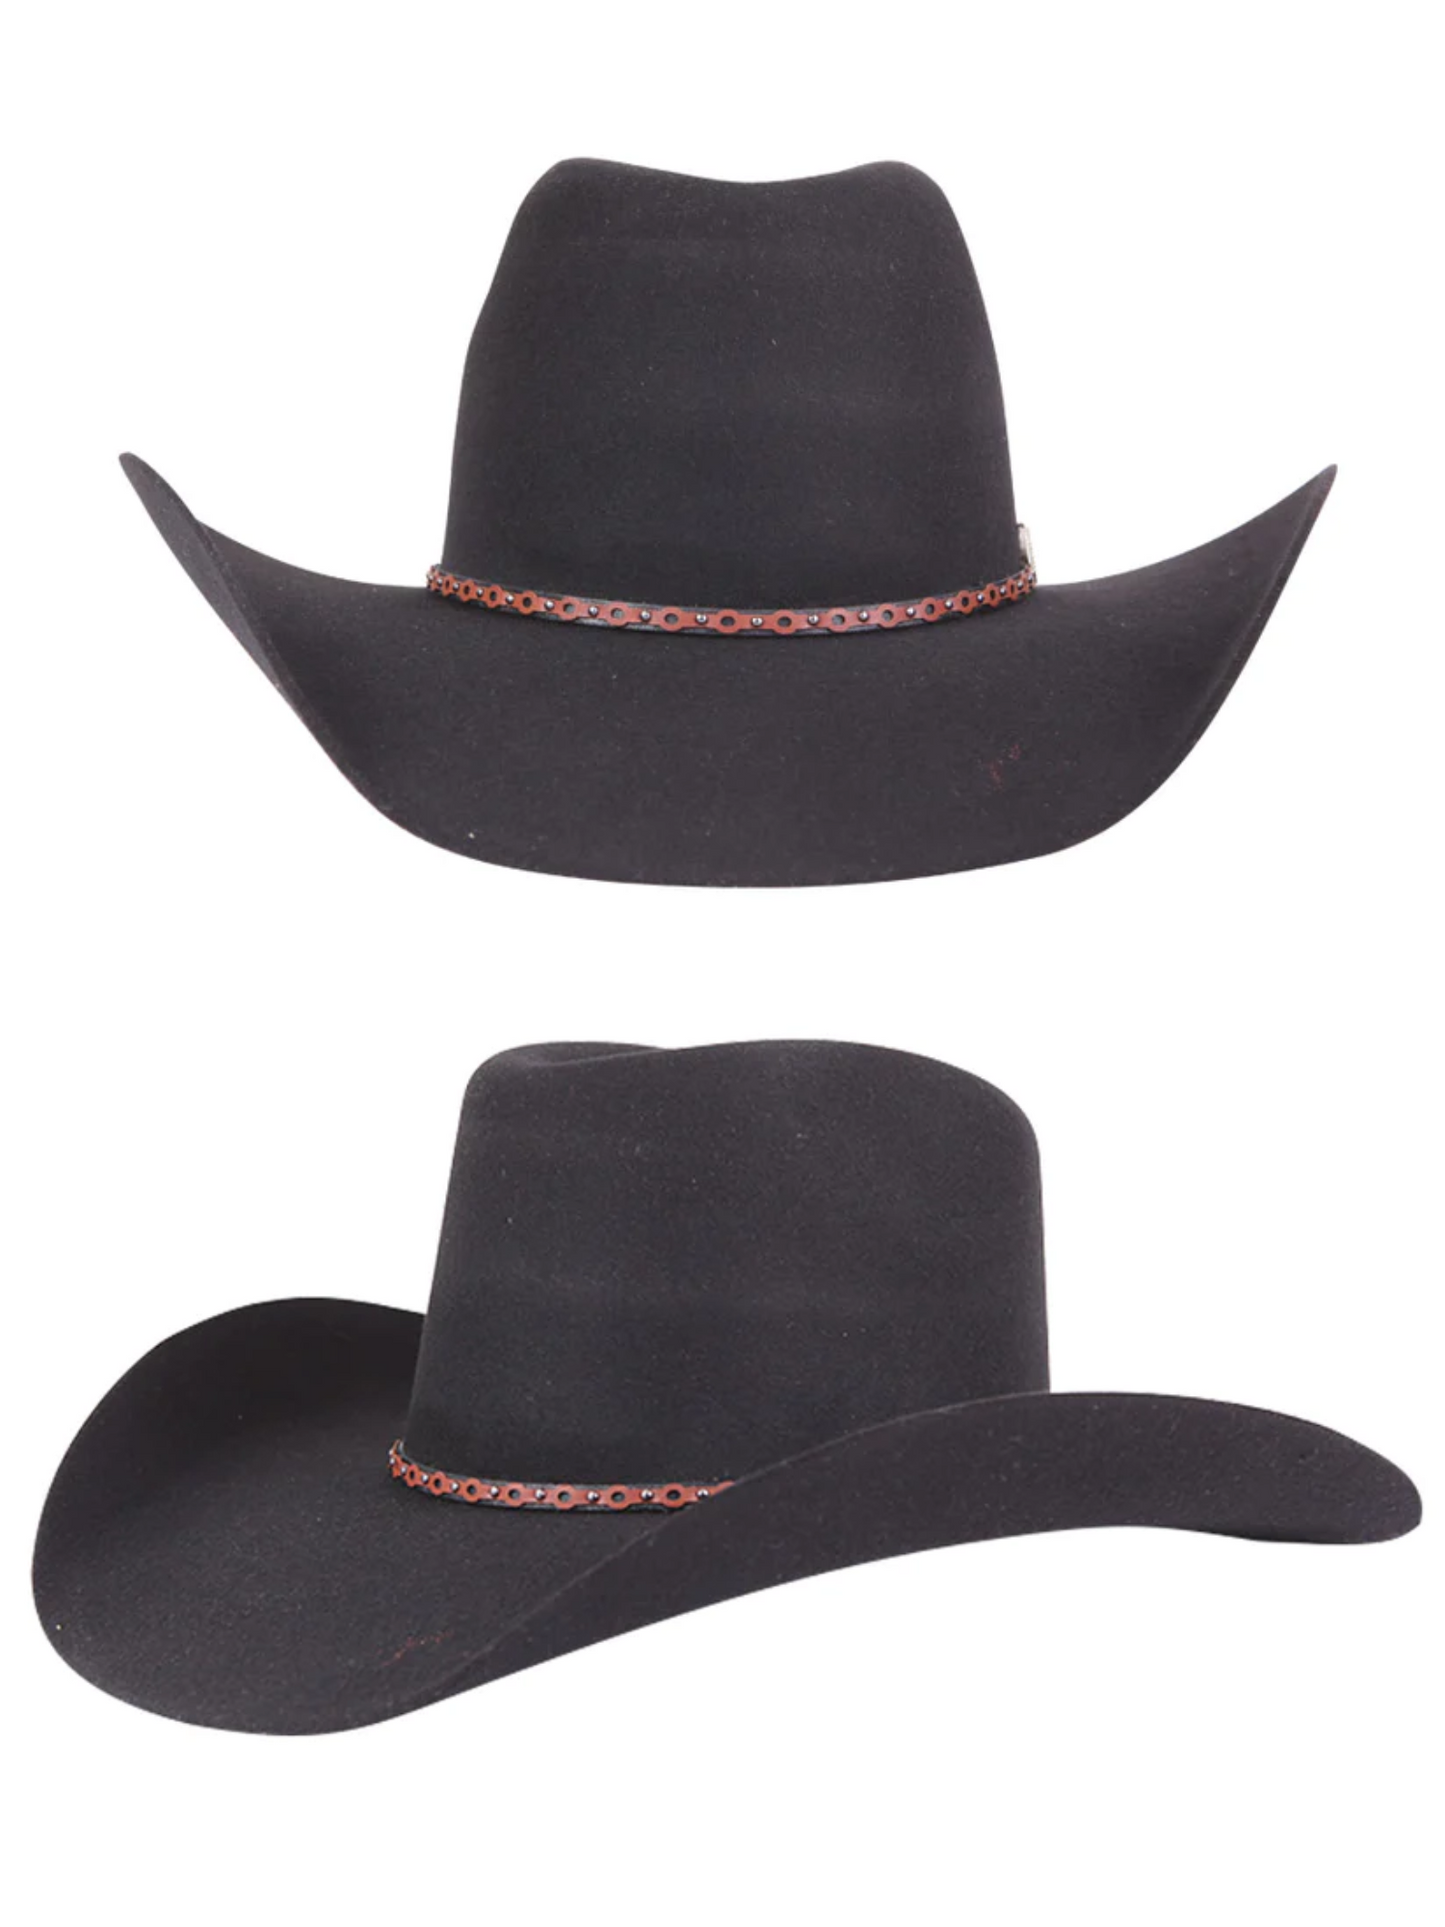 Texana Horma Conejo 50X Lana para Hombre 'El Señor de los Cielos' - ID: 41671 Cowboy Hat El Señor de los Cielos 